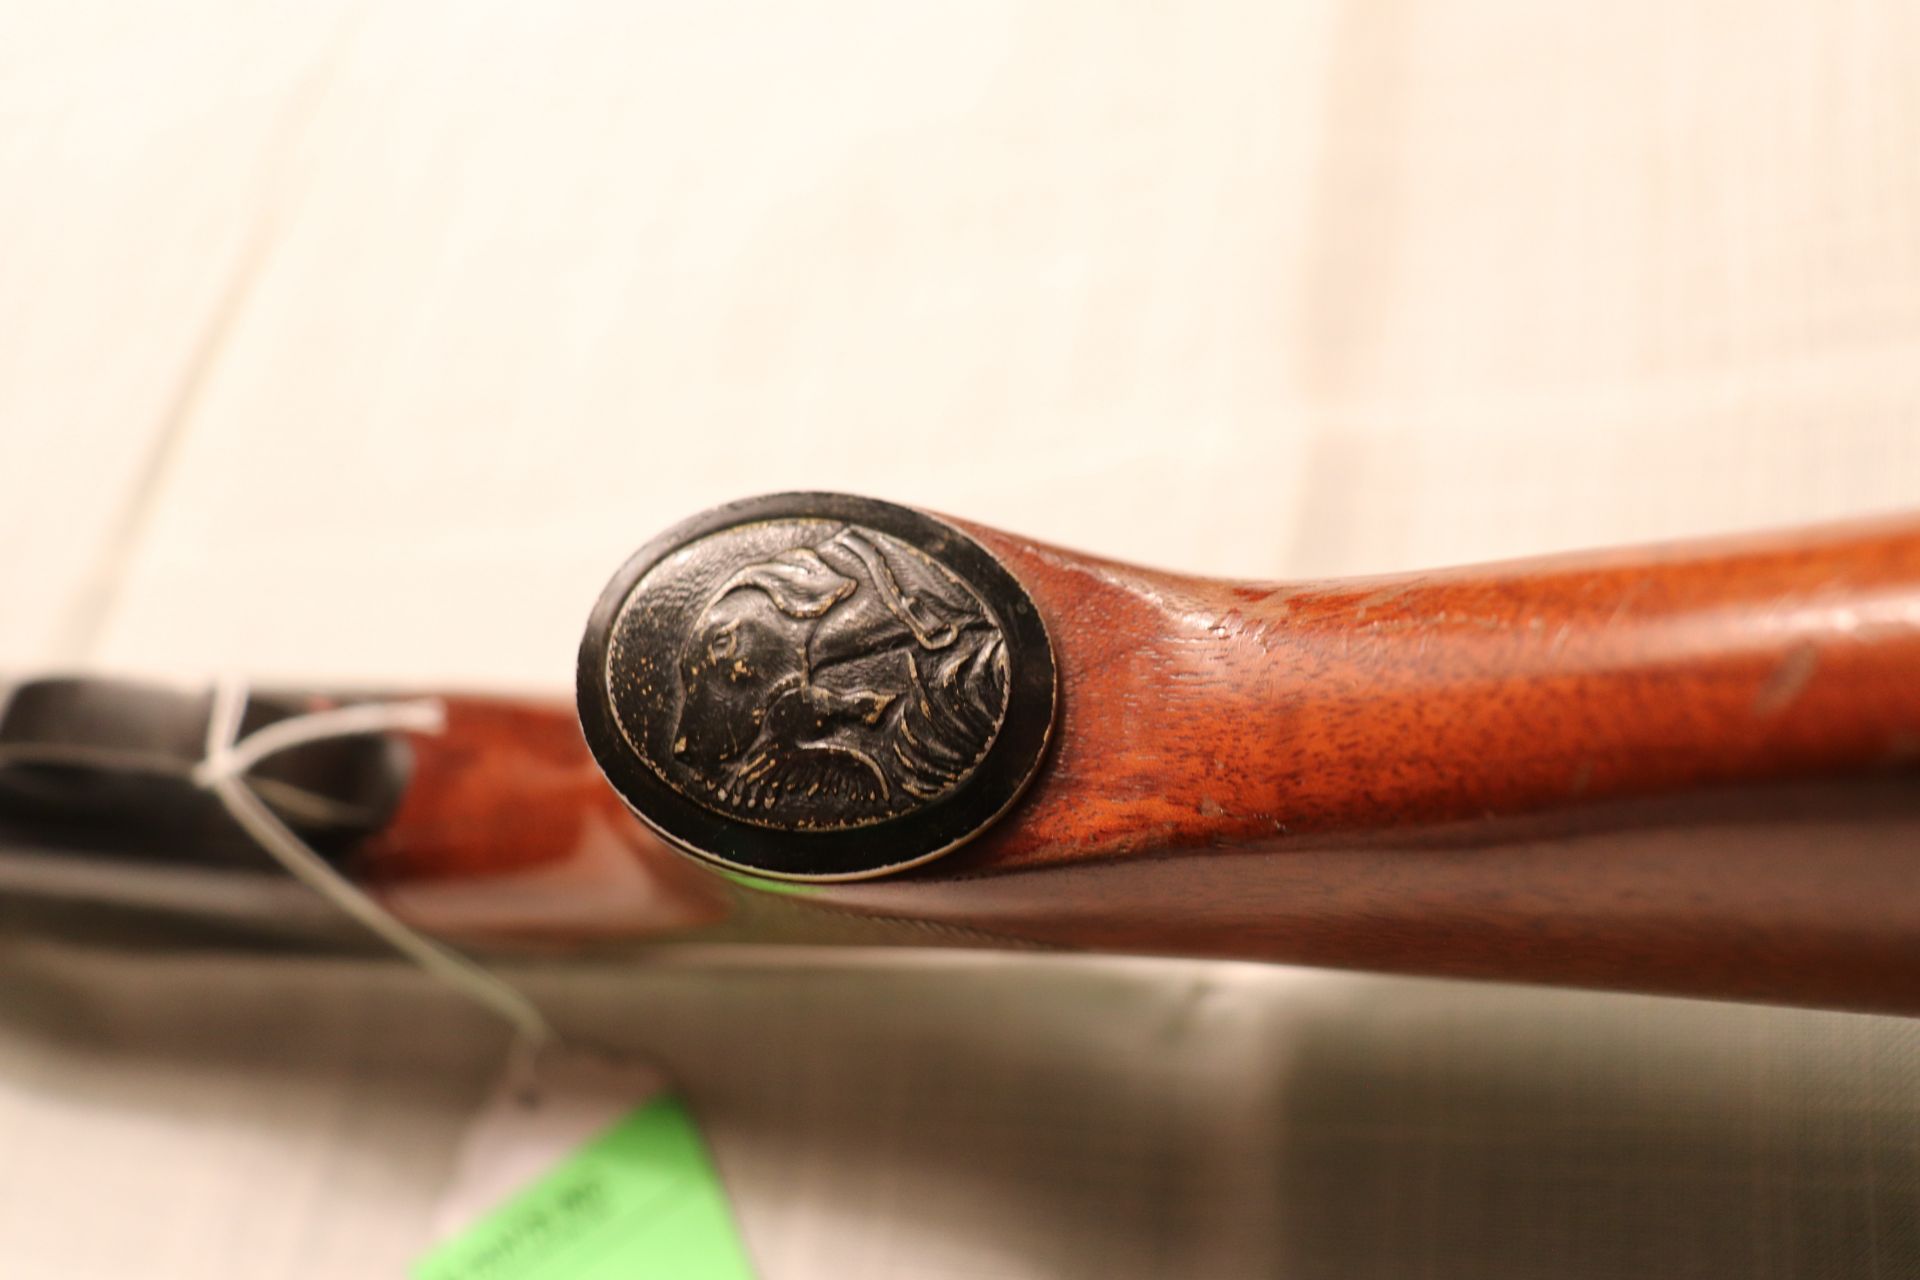 Remmington Sportsman 58 12 gauge shotgun - Image 8 of 8